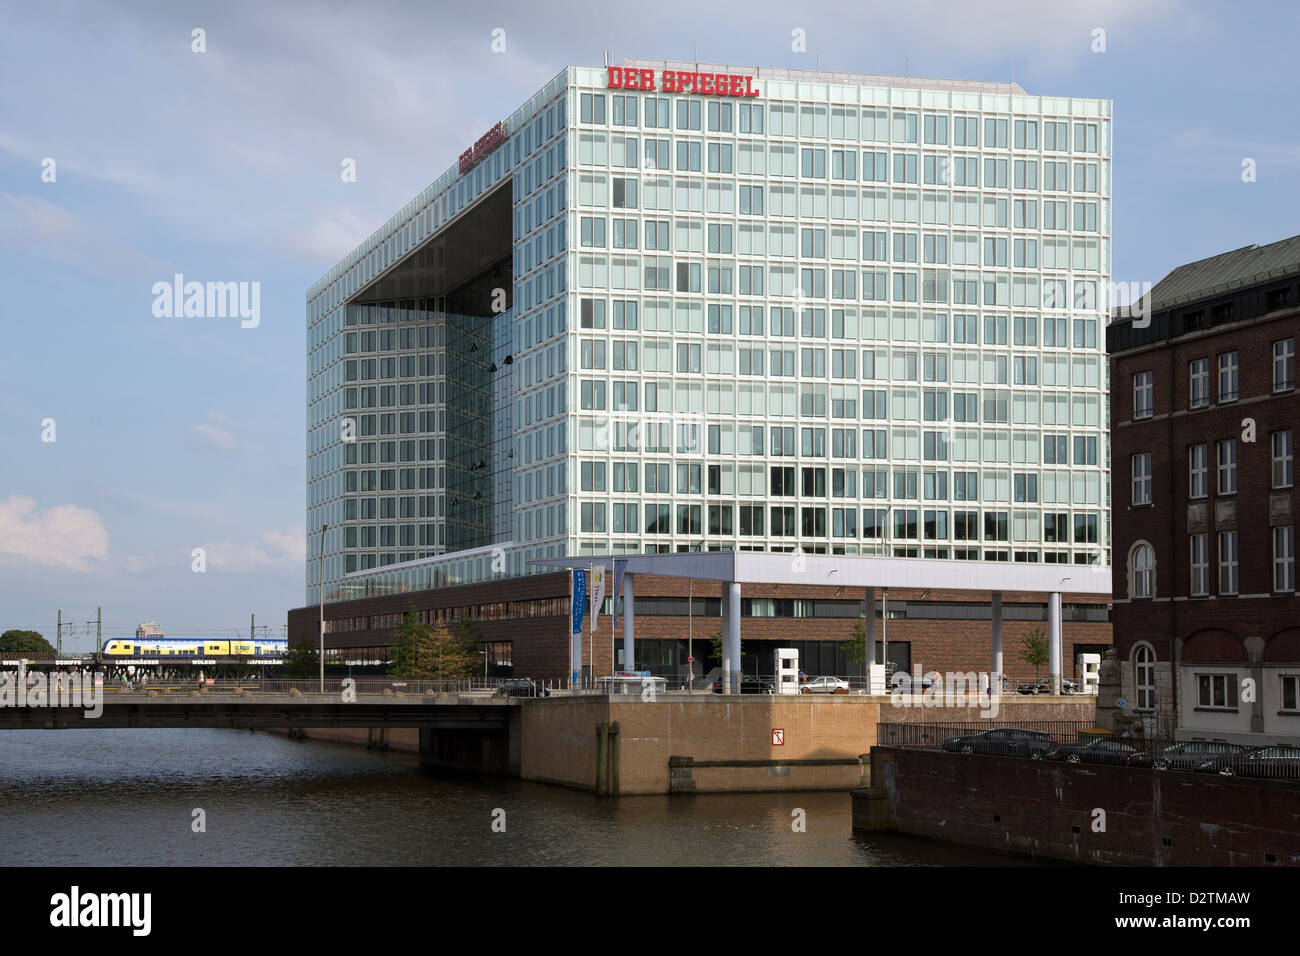 Das Spiegel-Haus in der HafenCity Hamburg, Deutschland Stockfotografie -  Alamy